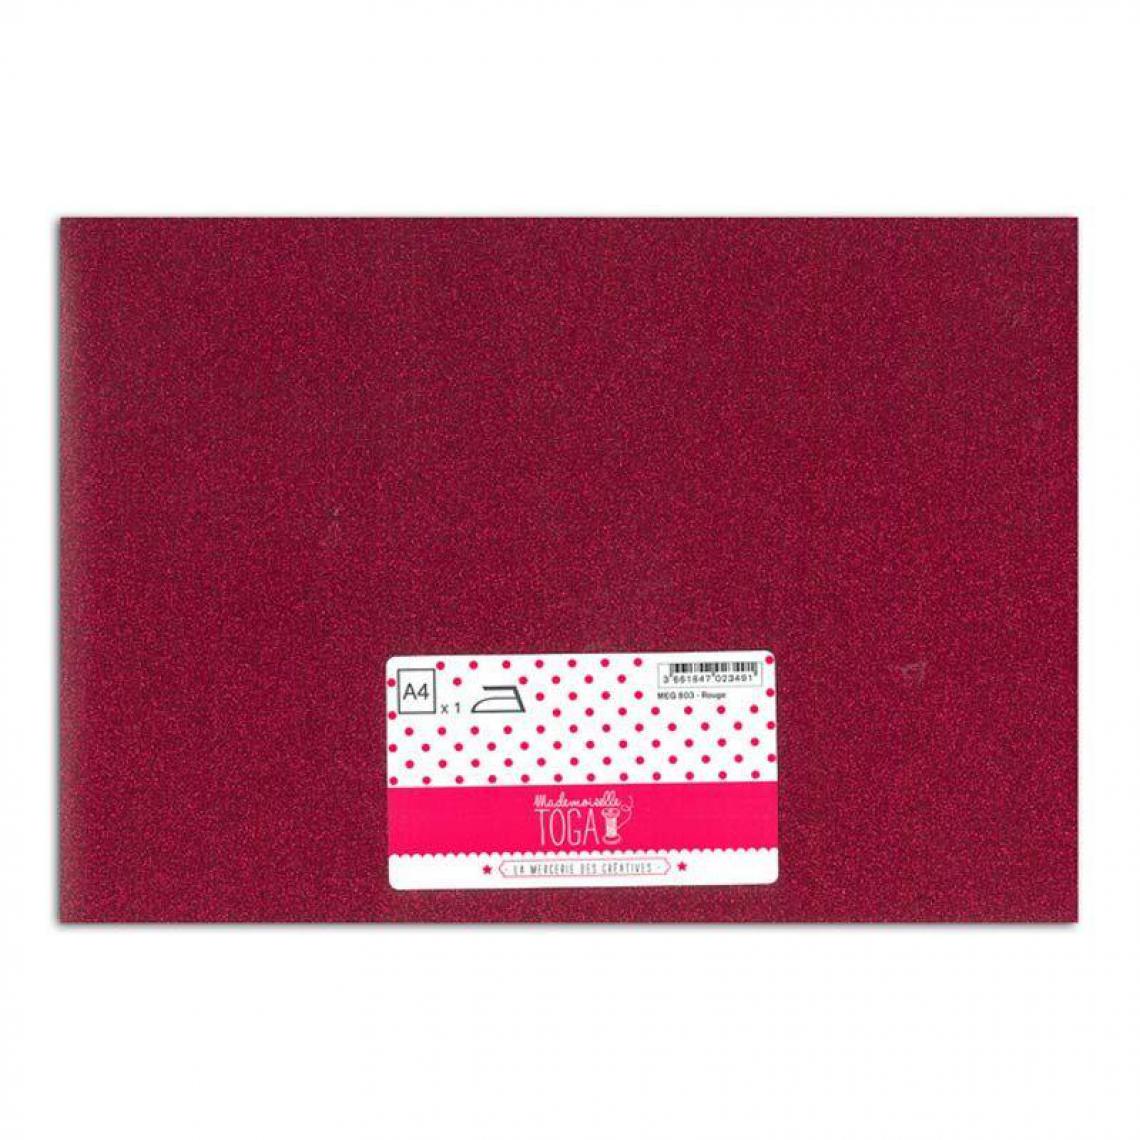 Toga - Flex thermocollant à paillettes - Rouge - 30 x 21 cm - Dessin et peinture